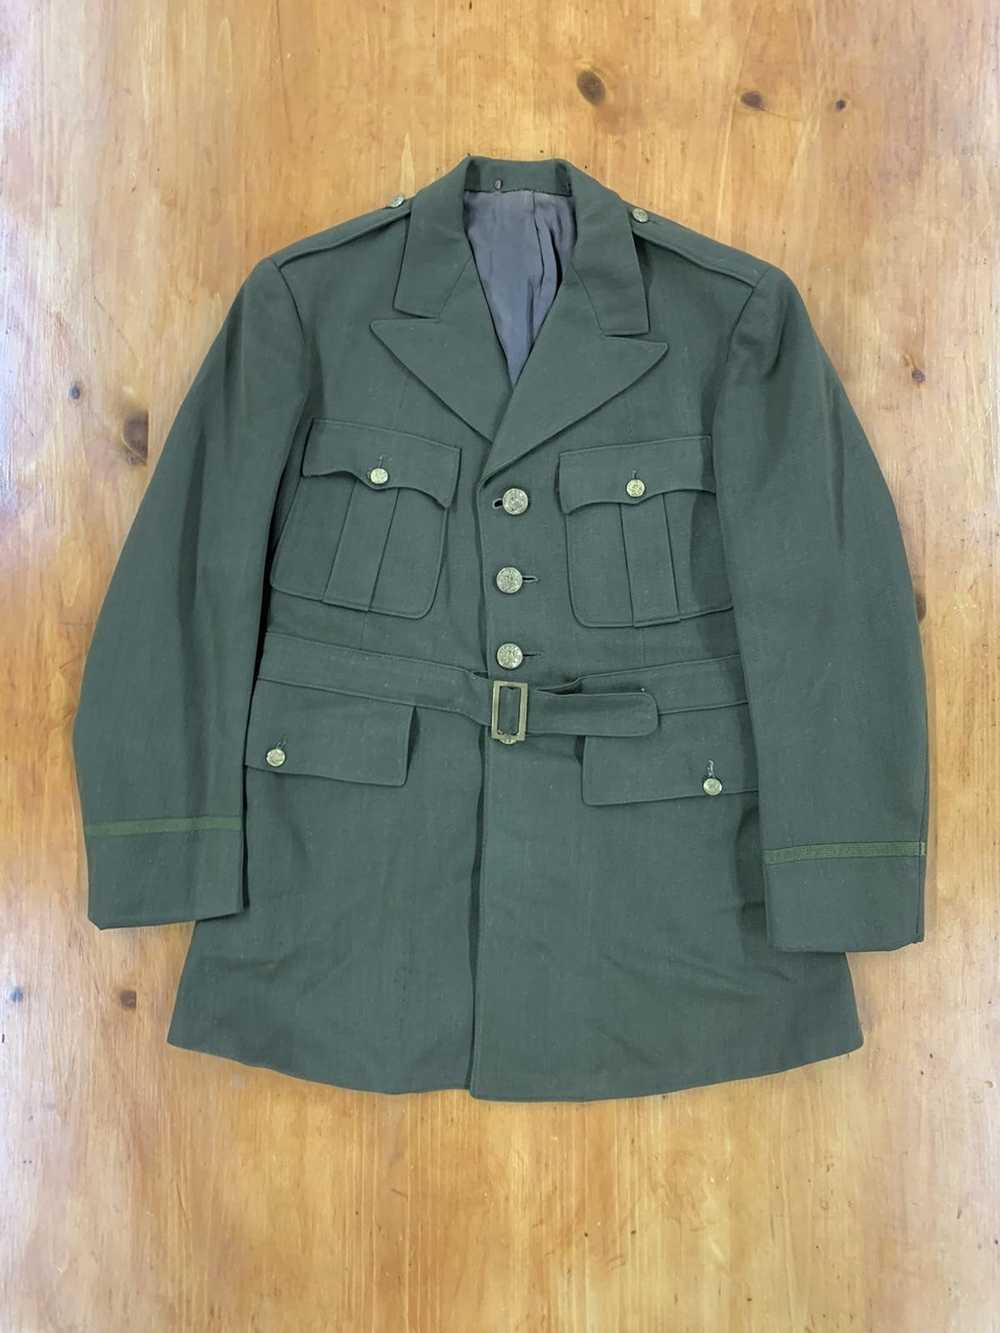 Vintage Vintage WW2 Belted Officers Uniform Jacket - image 1